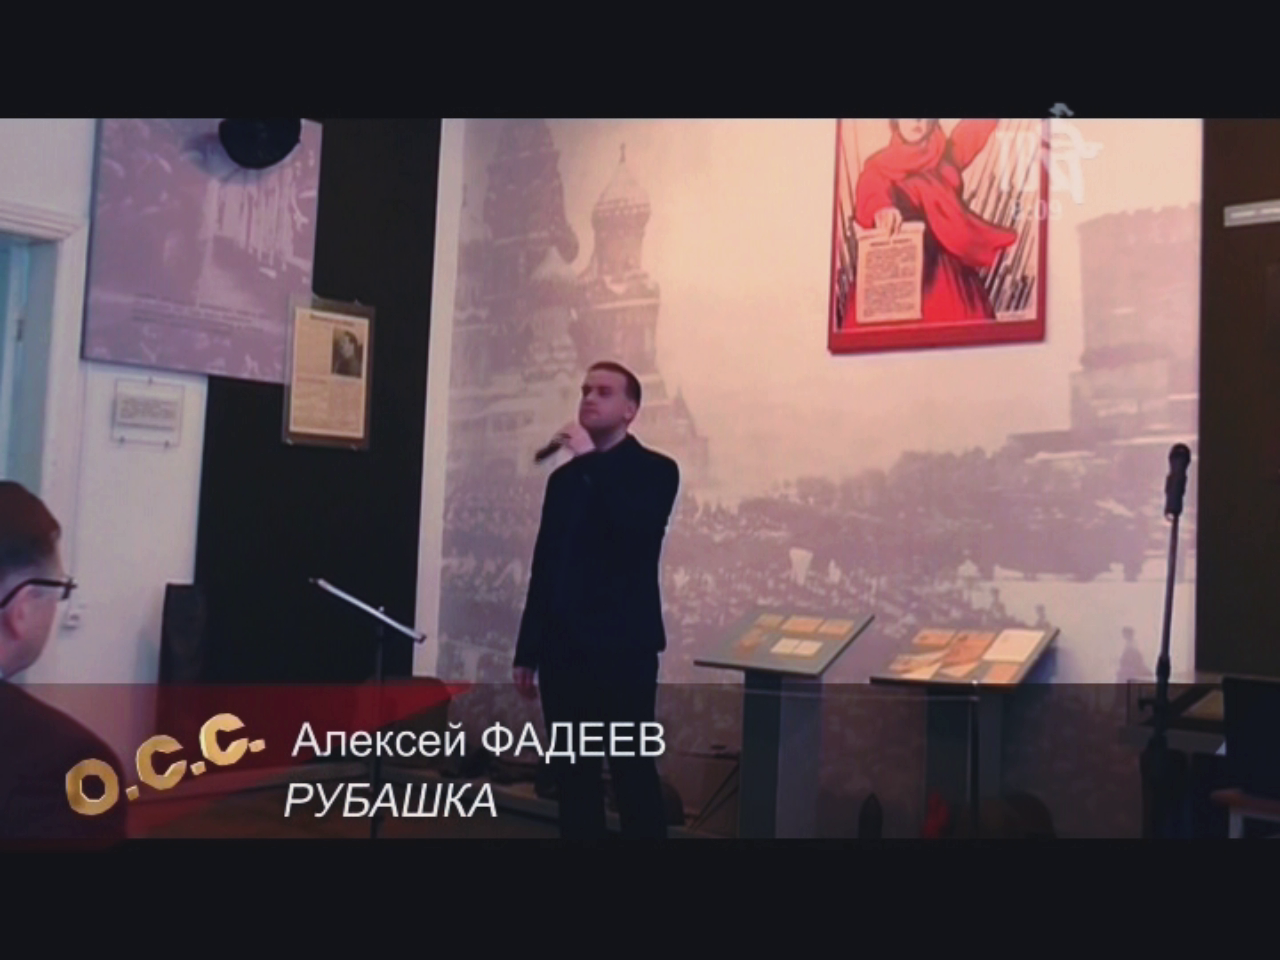 Алексей Фадеев с песней "Рубашка" на Шансон ТВ (сл. Валентины Басовой)